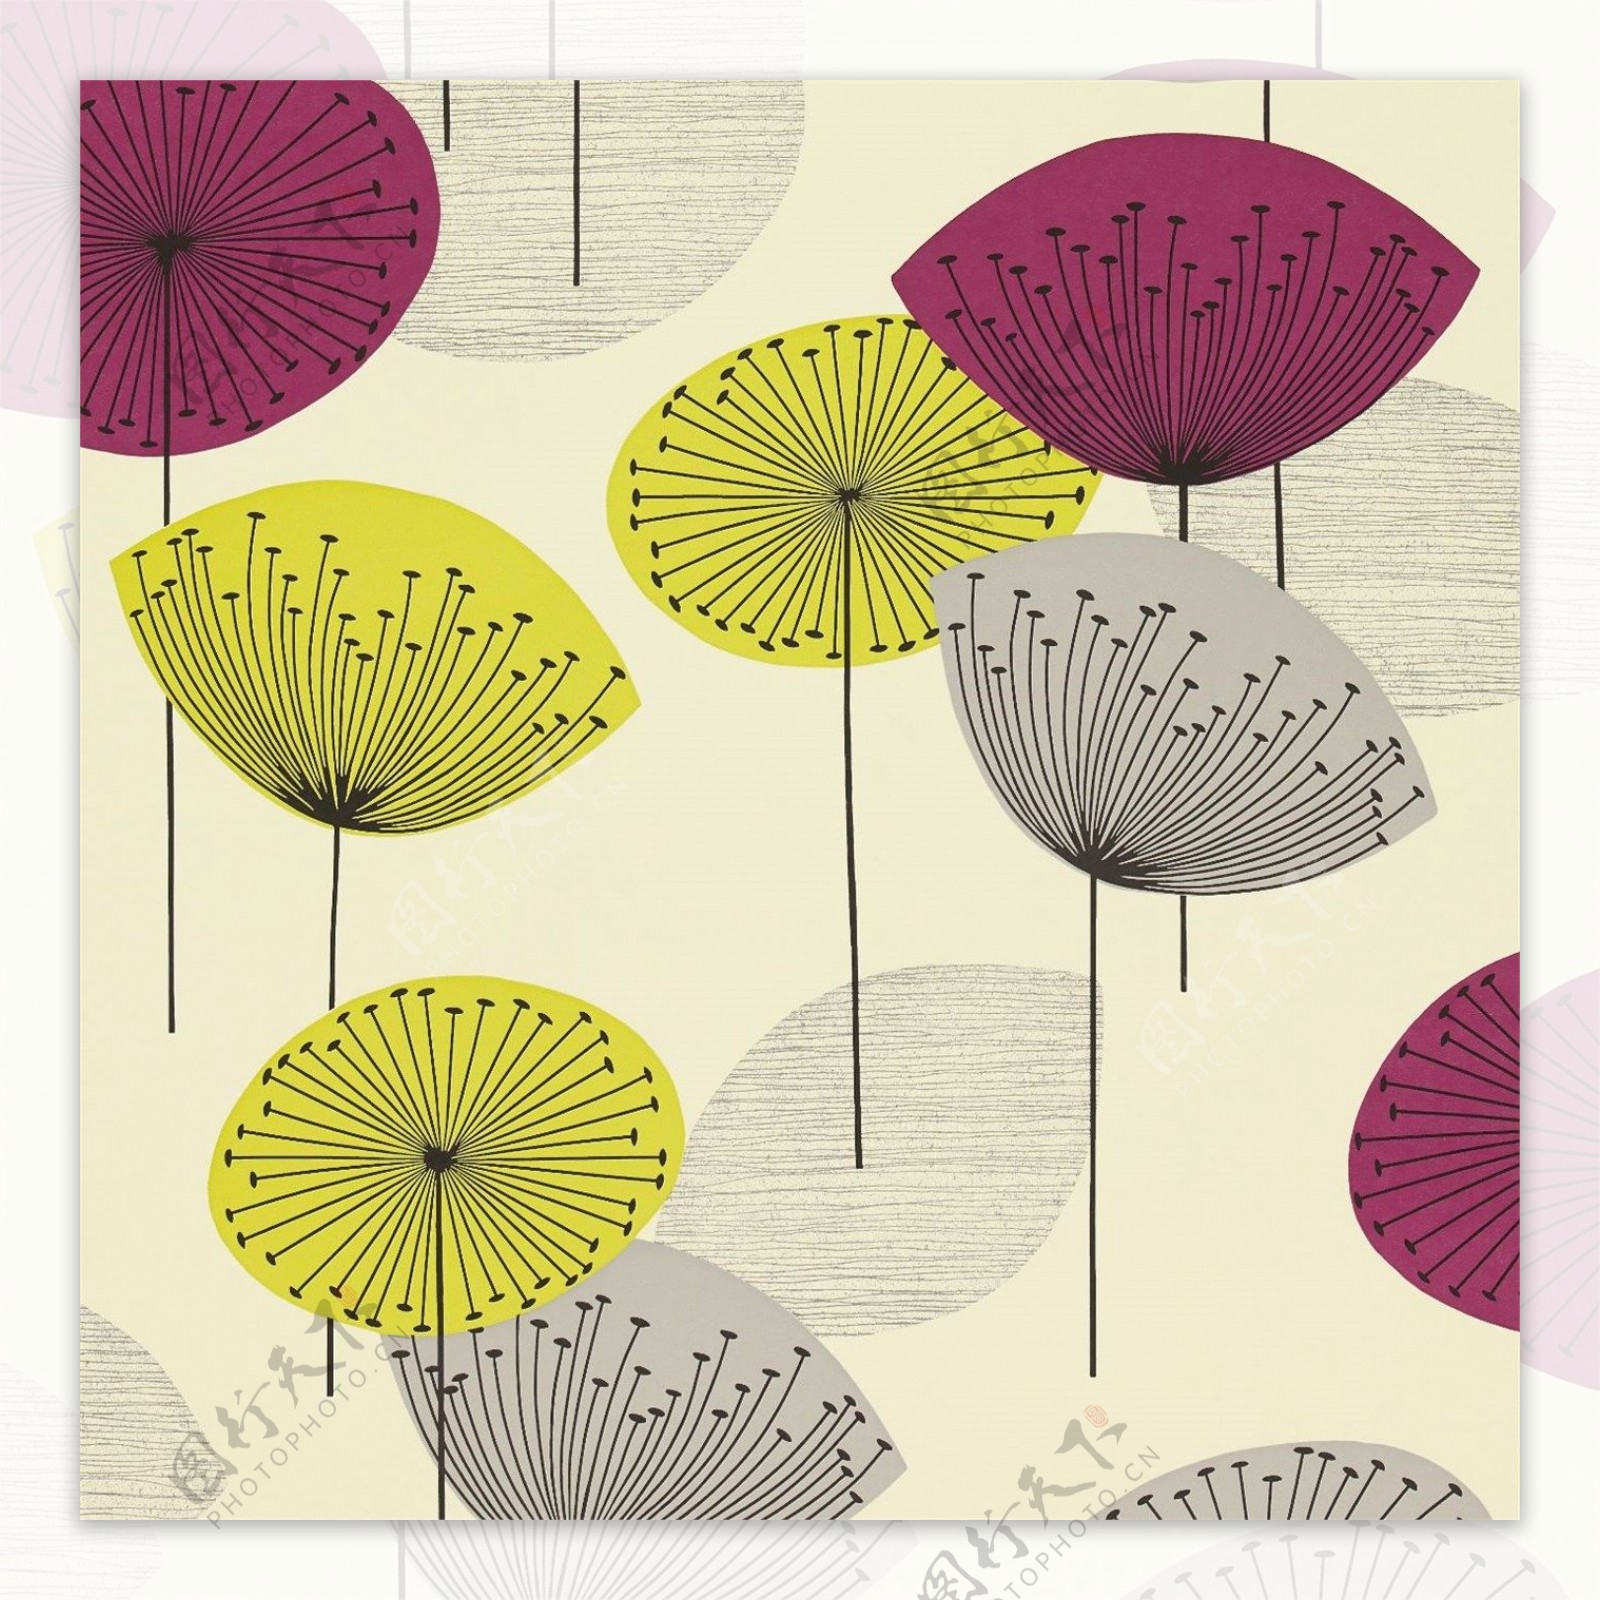 淡黄背景彩色莲蓬伞图案壁纸素材